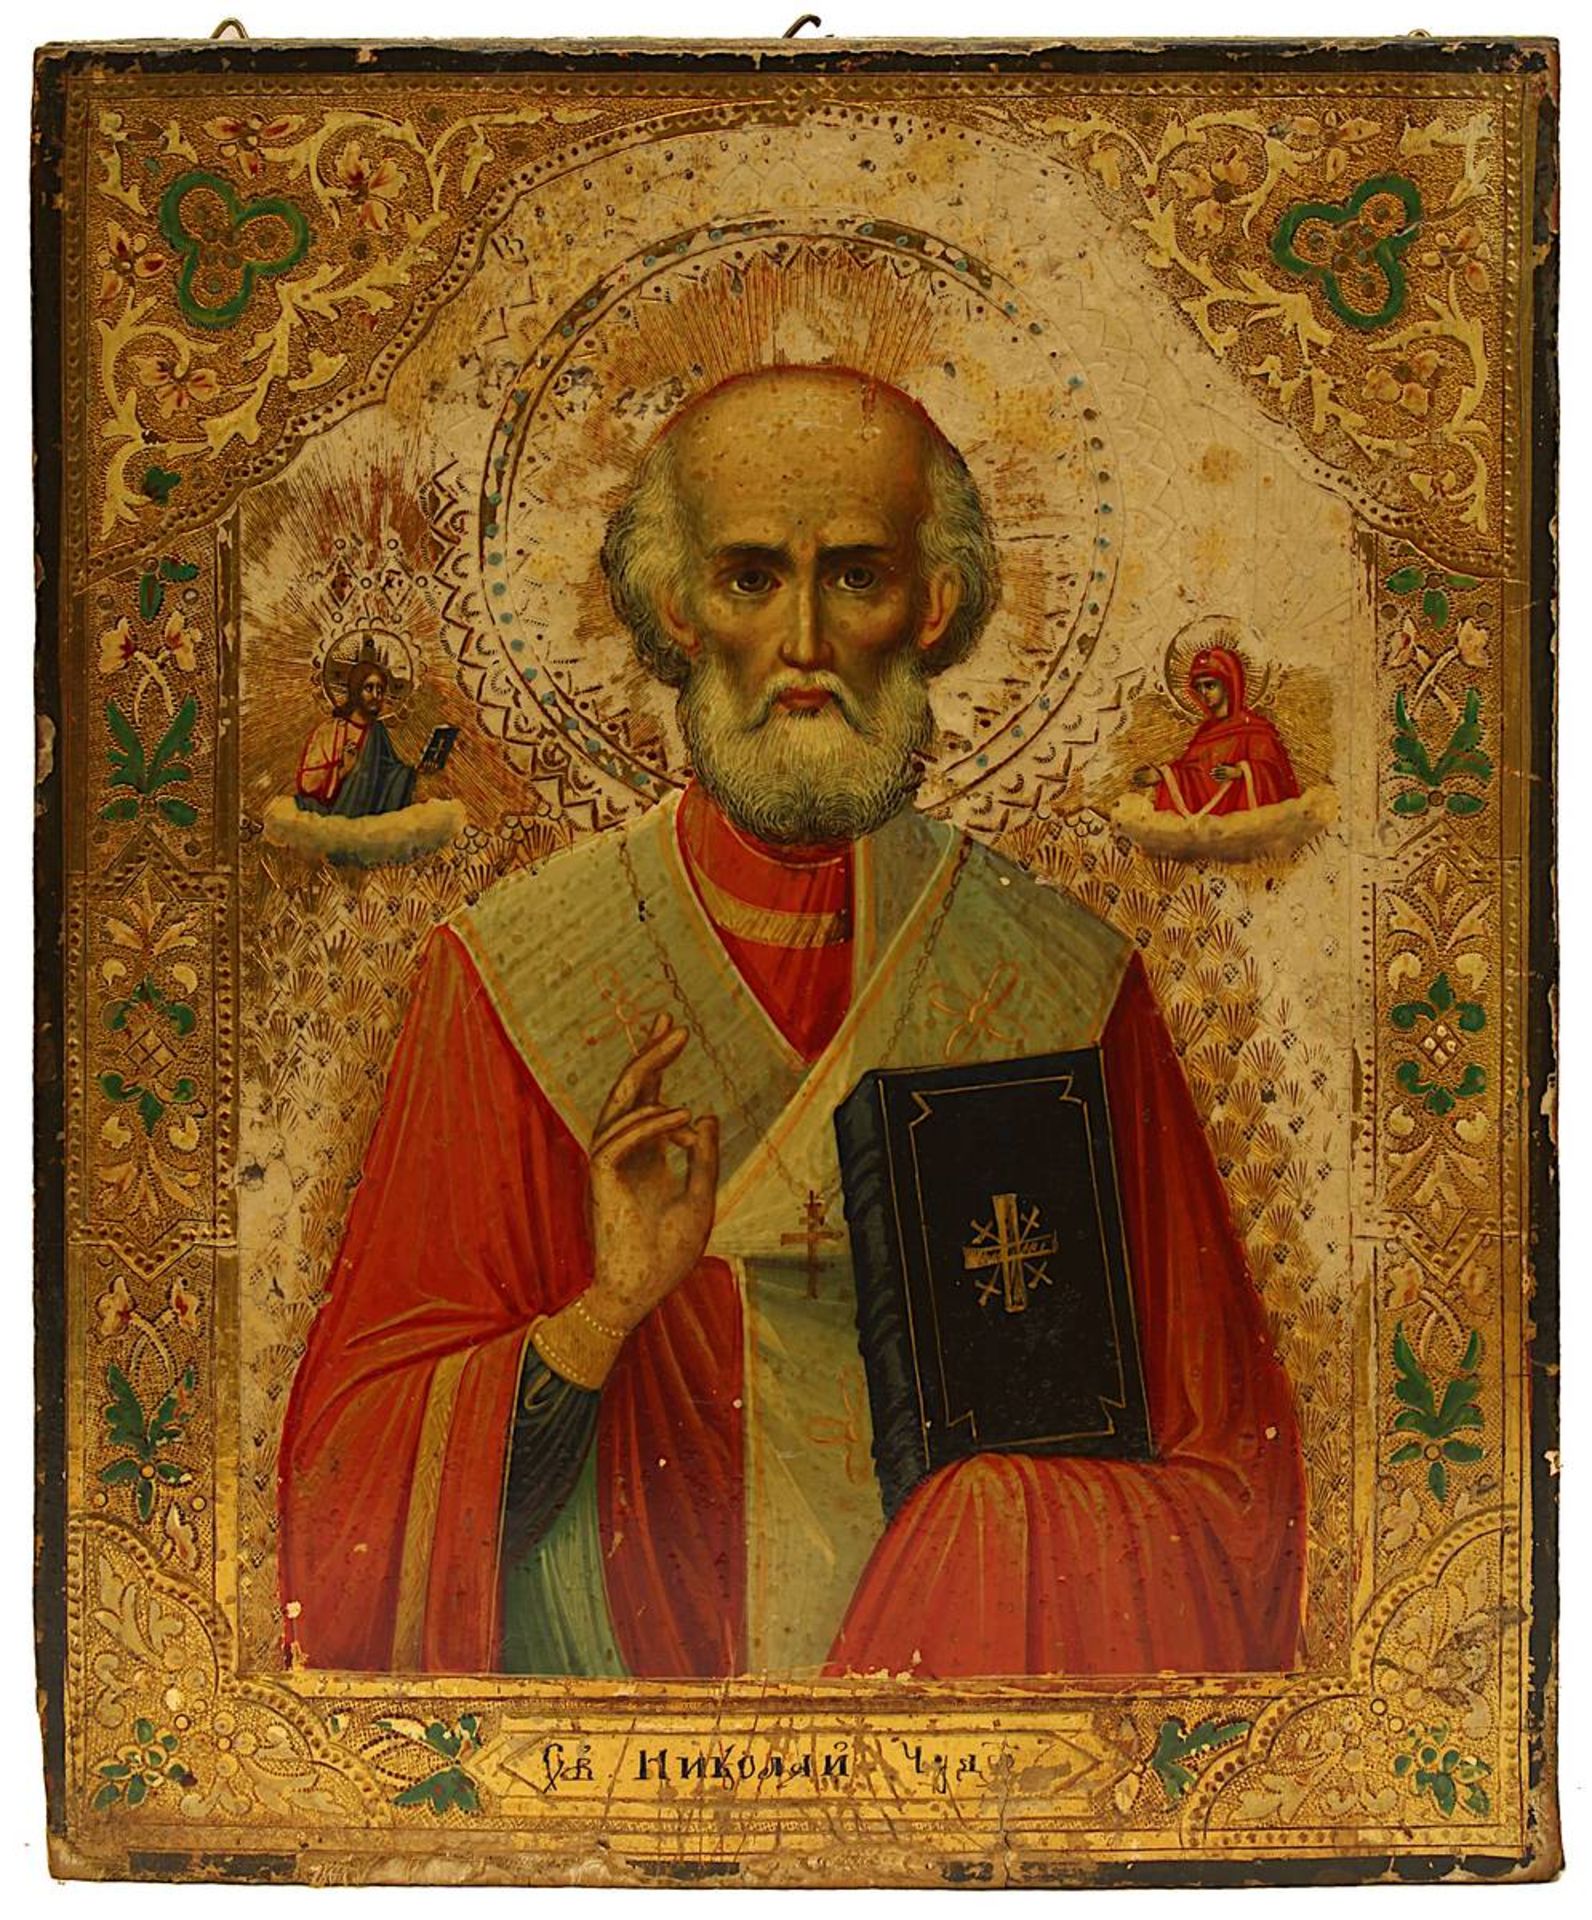 Ikone Heiliger Nikolaus der Wundertäter, Russland M. 19. Jh., Tempera auf Holz, mittig Halbfigur des